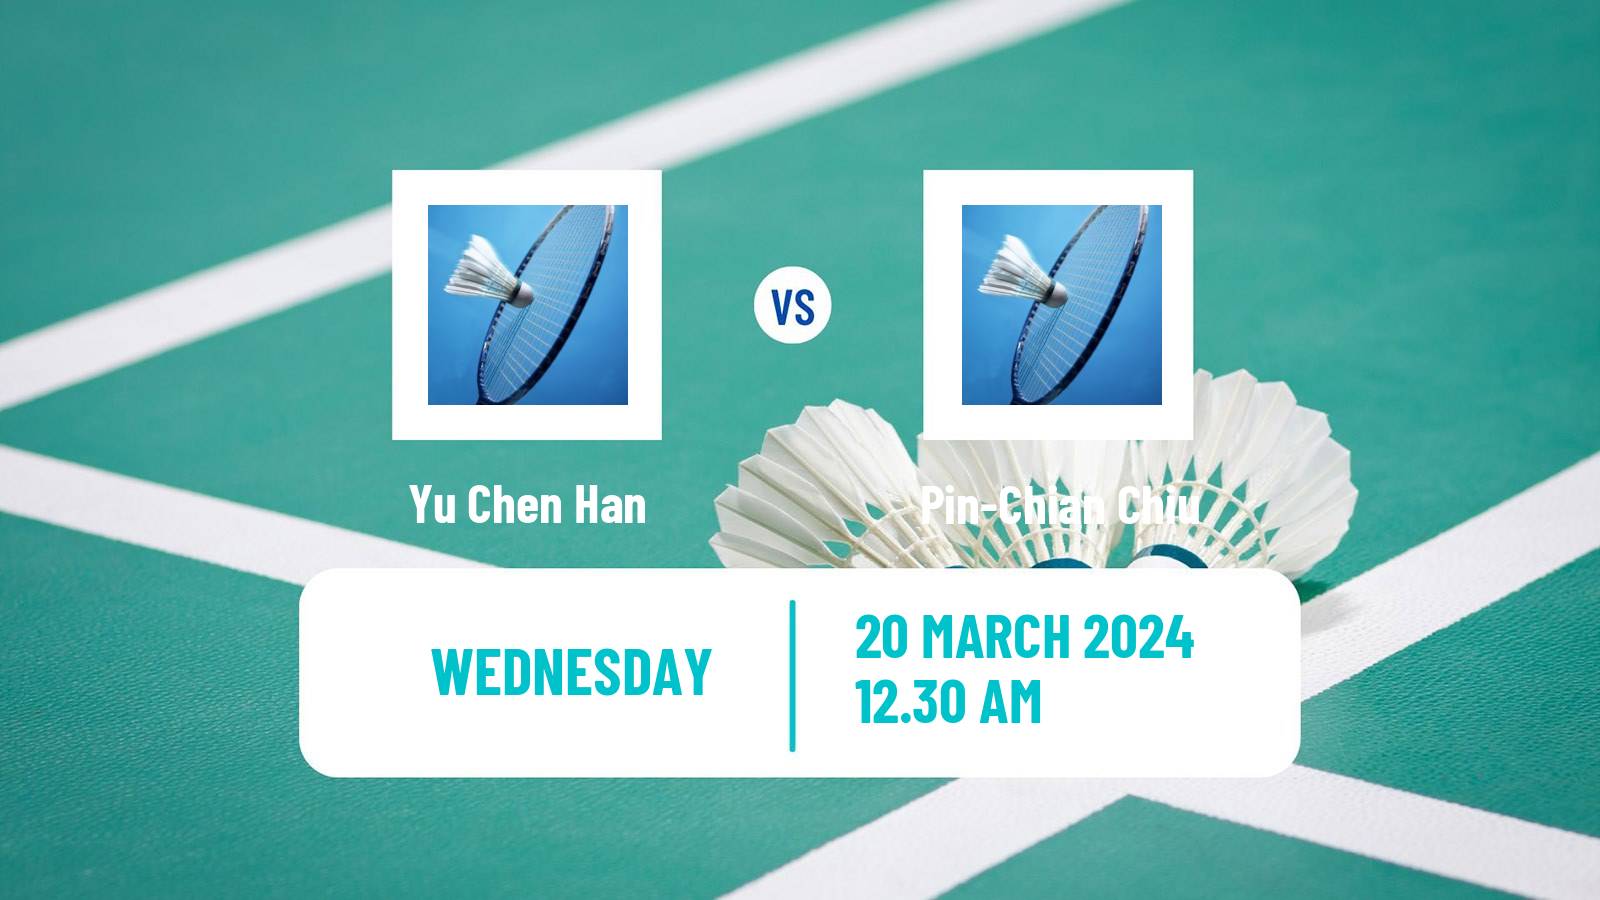 Badminton BWF World Tour China Masters Women Yu Chen Han - Pin-Chian Chiu